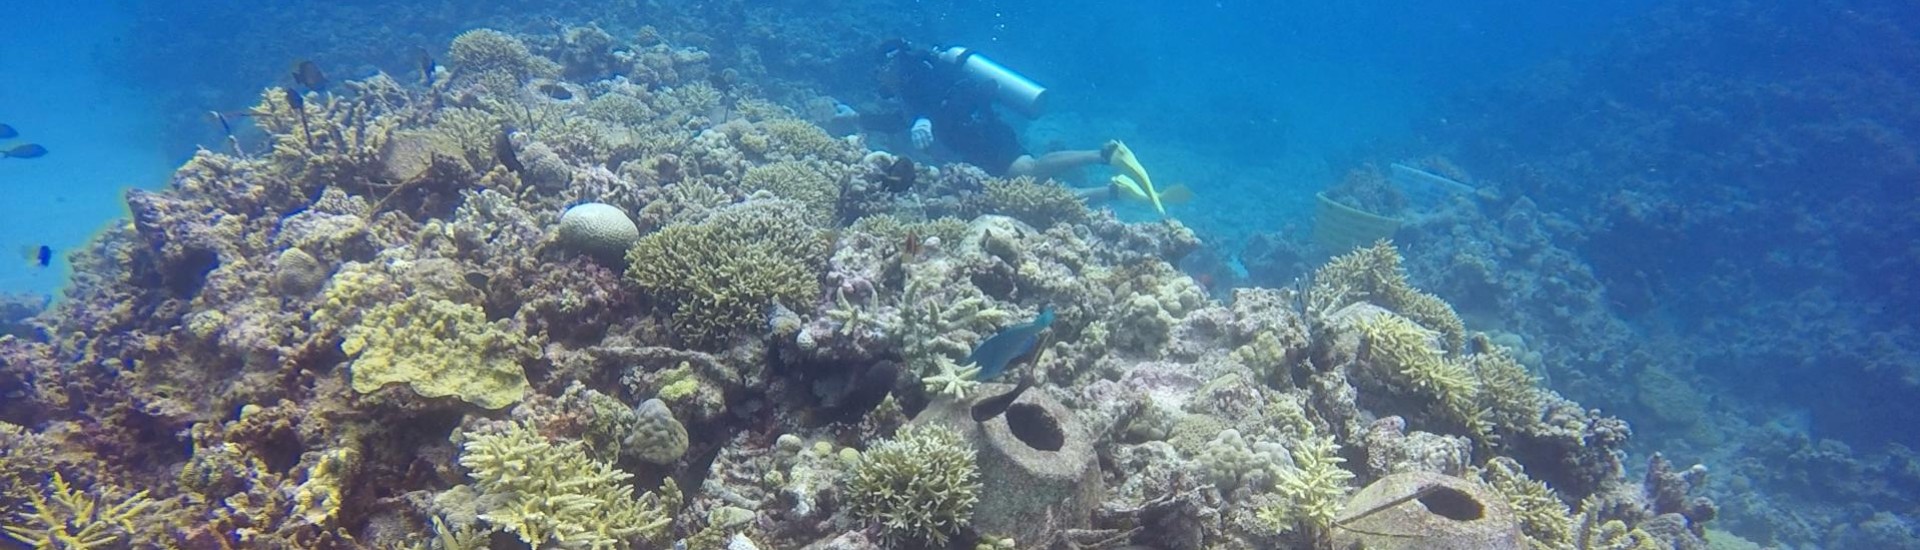 珊瑚礁生态修复